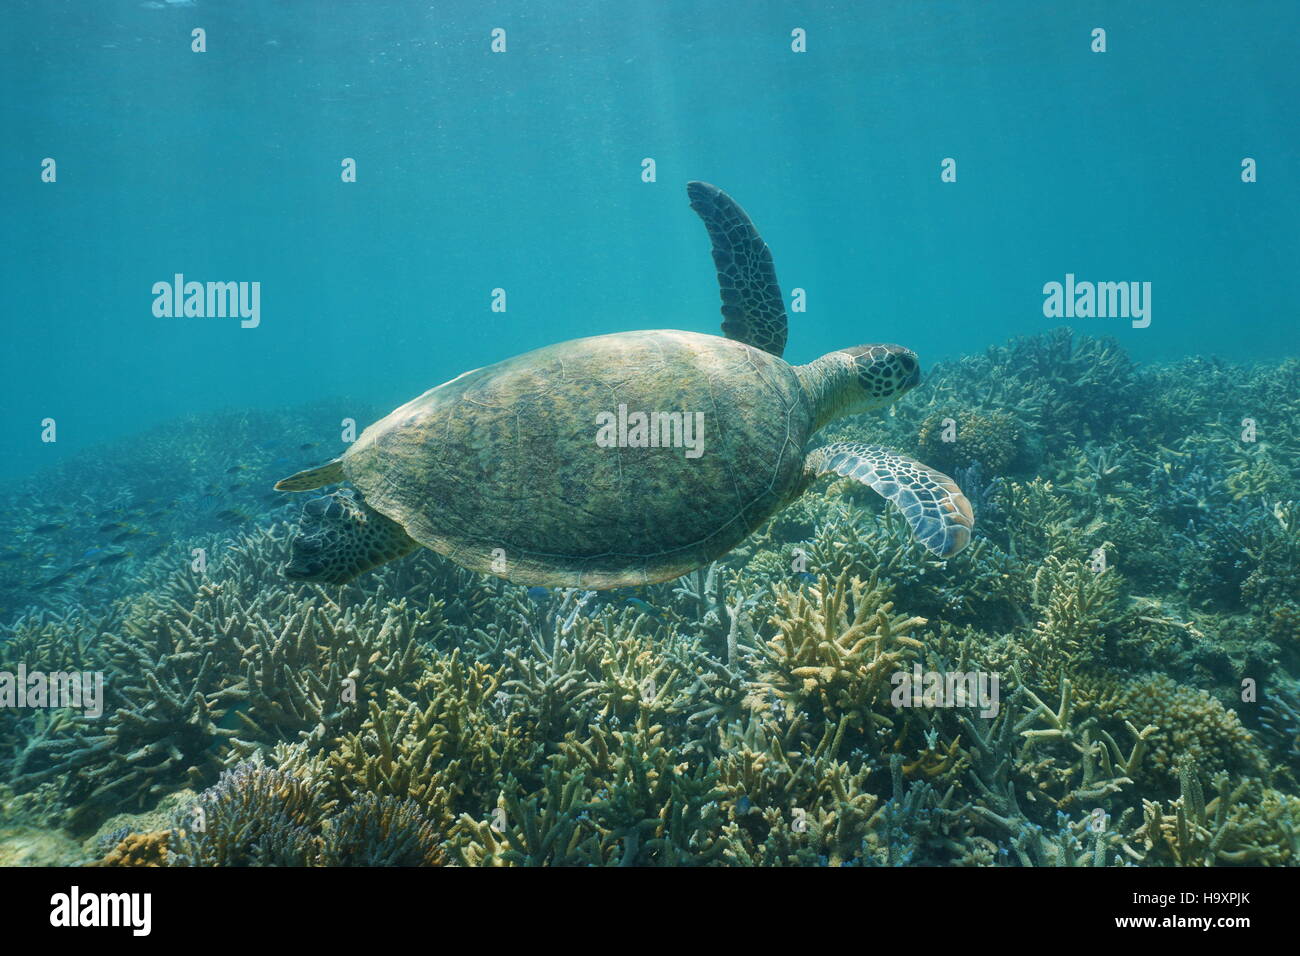 Underwater tartaruga verde, Chelonia Mydas, nuoto su una scogliera di corallo, Nuova Caledonia, oceano pacifico del sud Foto Stock